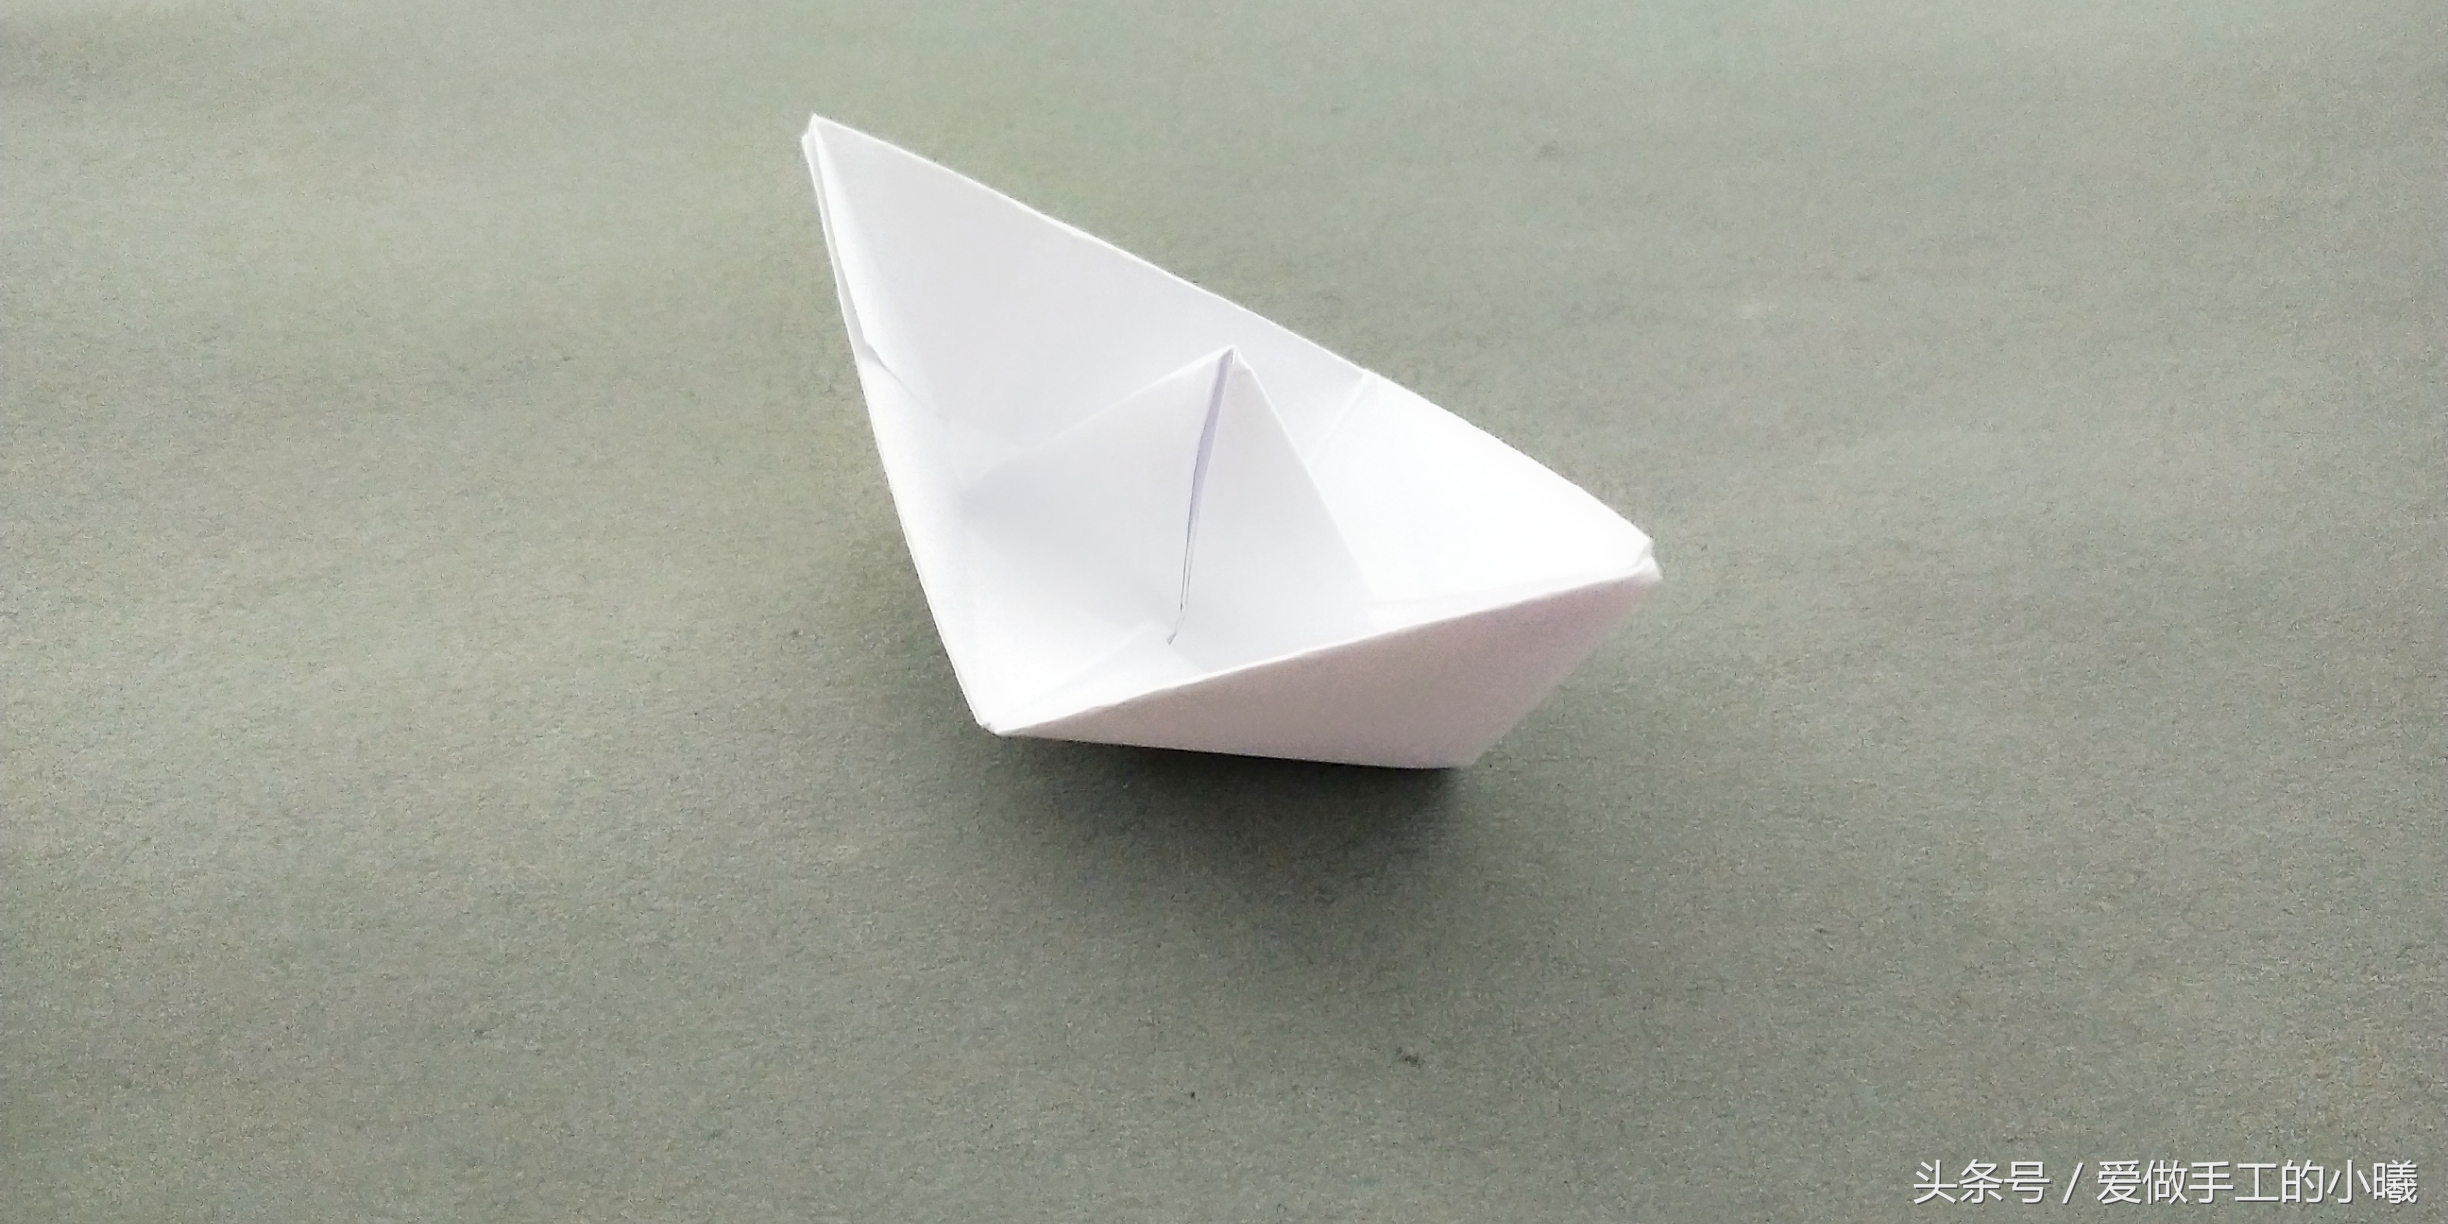 手工船模型制作图纸_万图壁纸网